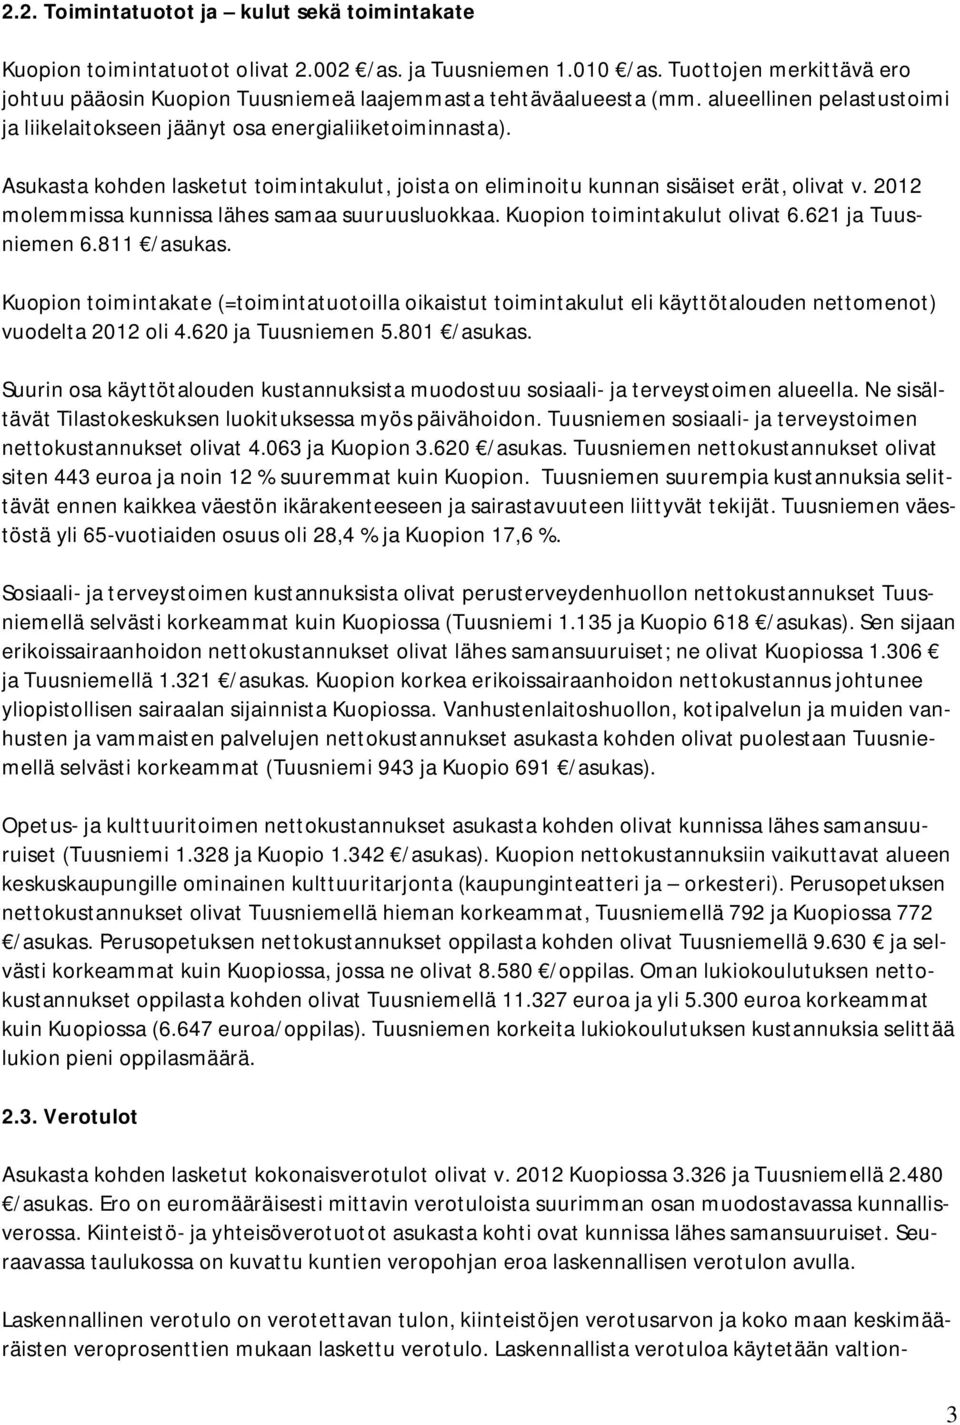 Asukasta kohden lasketut toimintakulut, joista on eliminoitu kunnan sisäiset erät, olivat v. 2012 molemmissa kunnissa lähes samaa suuruusluokkaa. Kuopion toimintakulut olivat 6.621 ja Tuusniemen 6.